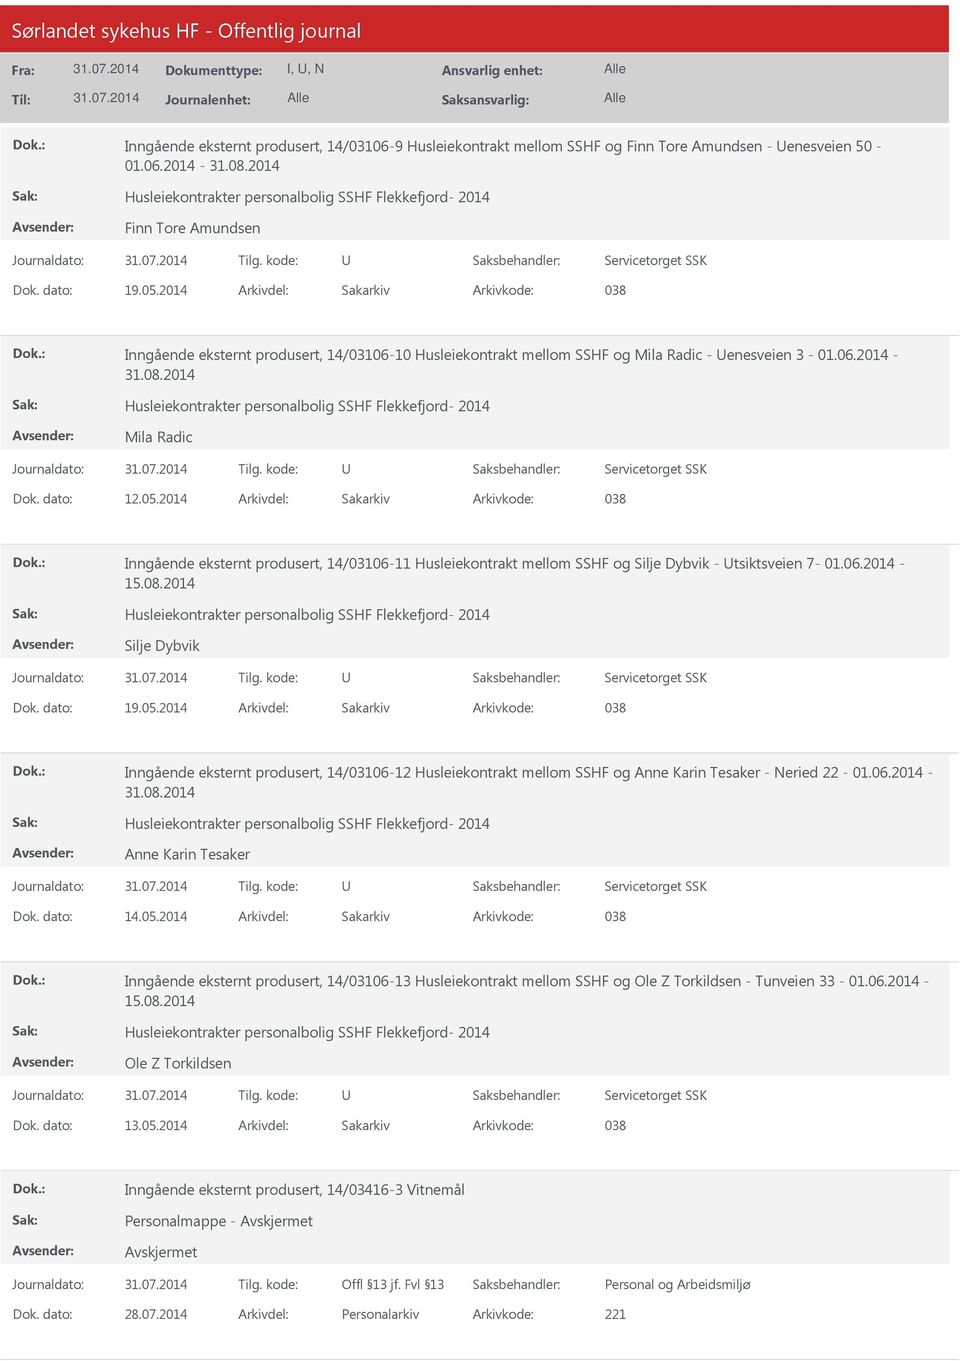 2014 Arkivdel: Sakarkiv Arkivkode: 038 Inngående eksternt produsert, 14/03106-10 Husleiekontrakt mellom SSHF og Mila Radic - enesveien 3-01.06.2014-31.08.